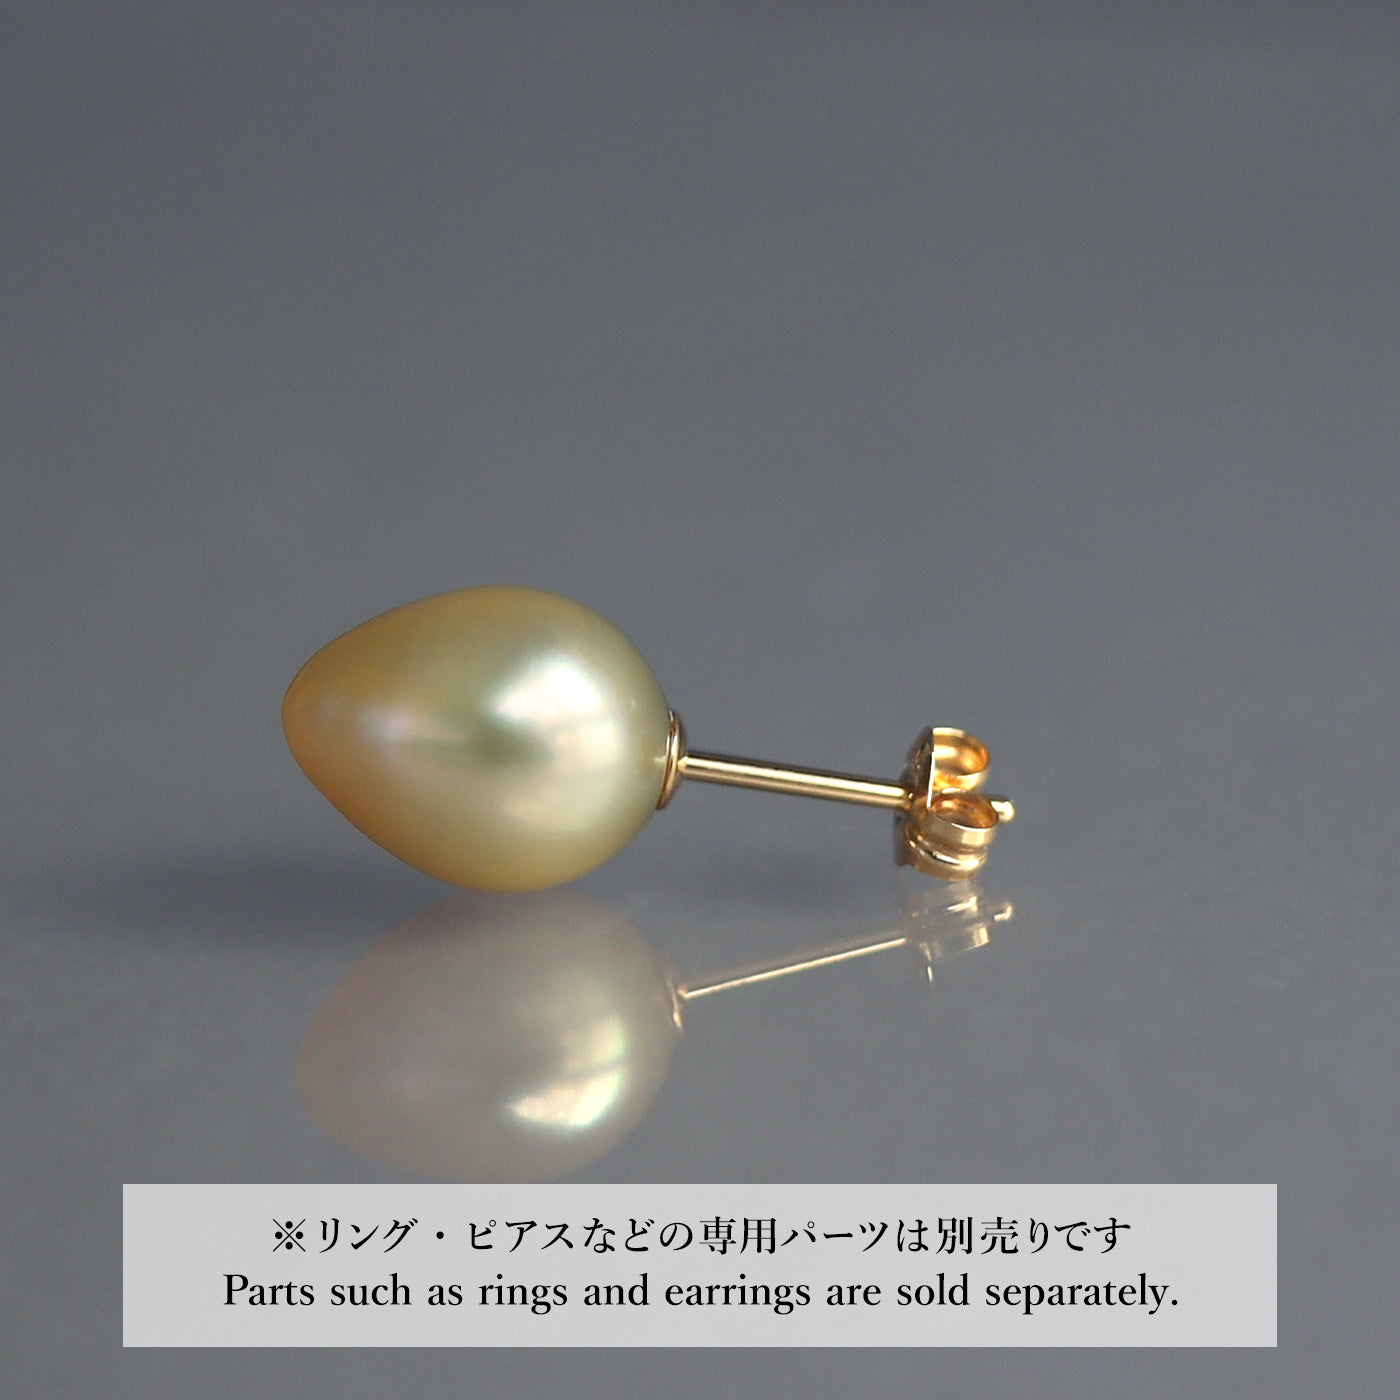 【COLLECTIBLE】Golden South Sea Pearl (No. CG3935)